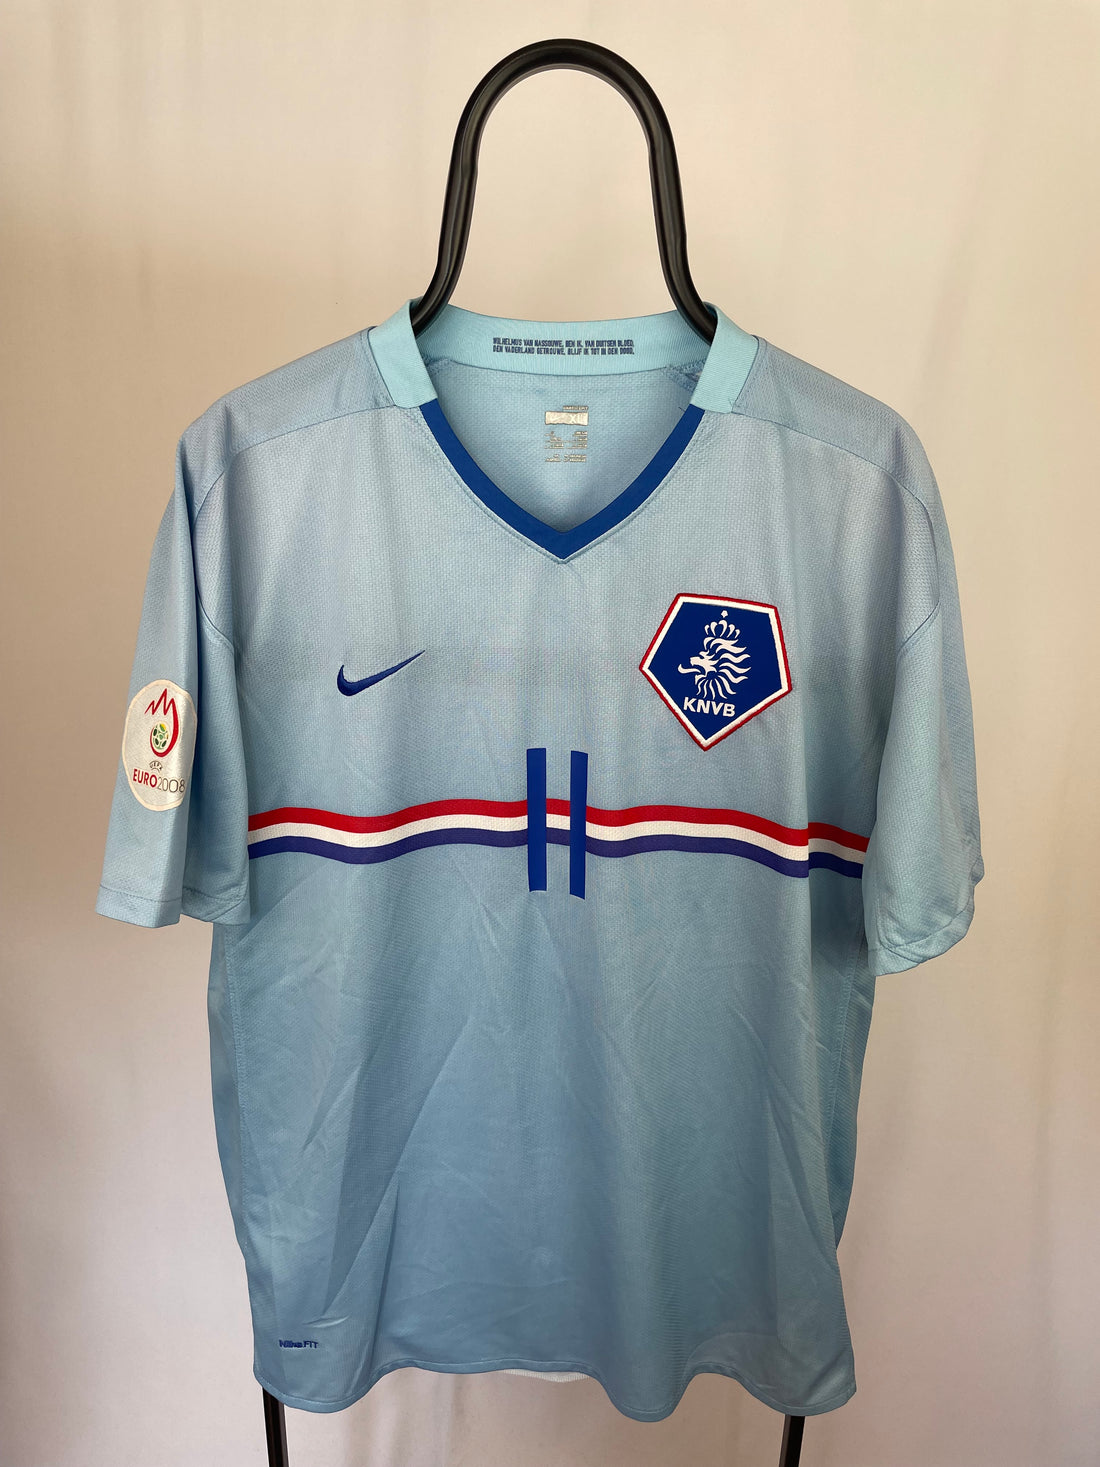 Babel Holland 08/10 away jersey - XL